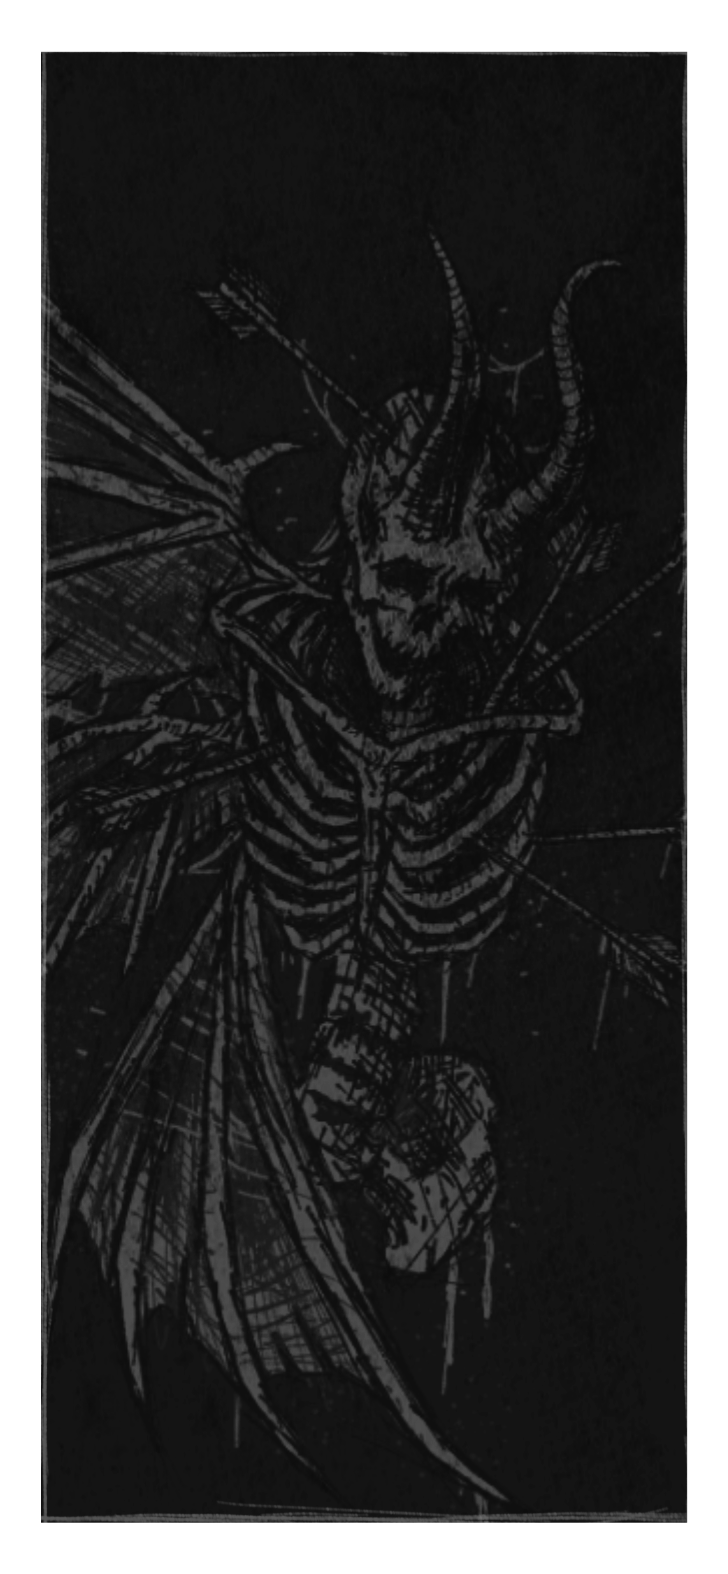 Ein hochformatiges Bild das eine Illustration eines Skeletts mit Hörnern zeigt